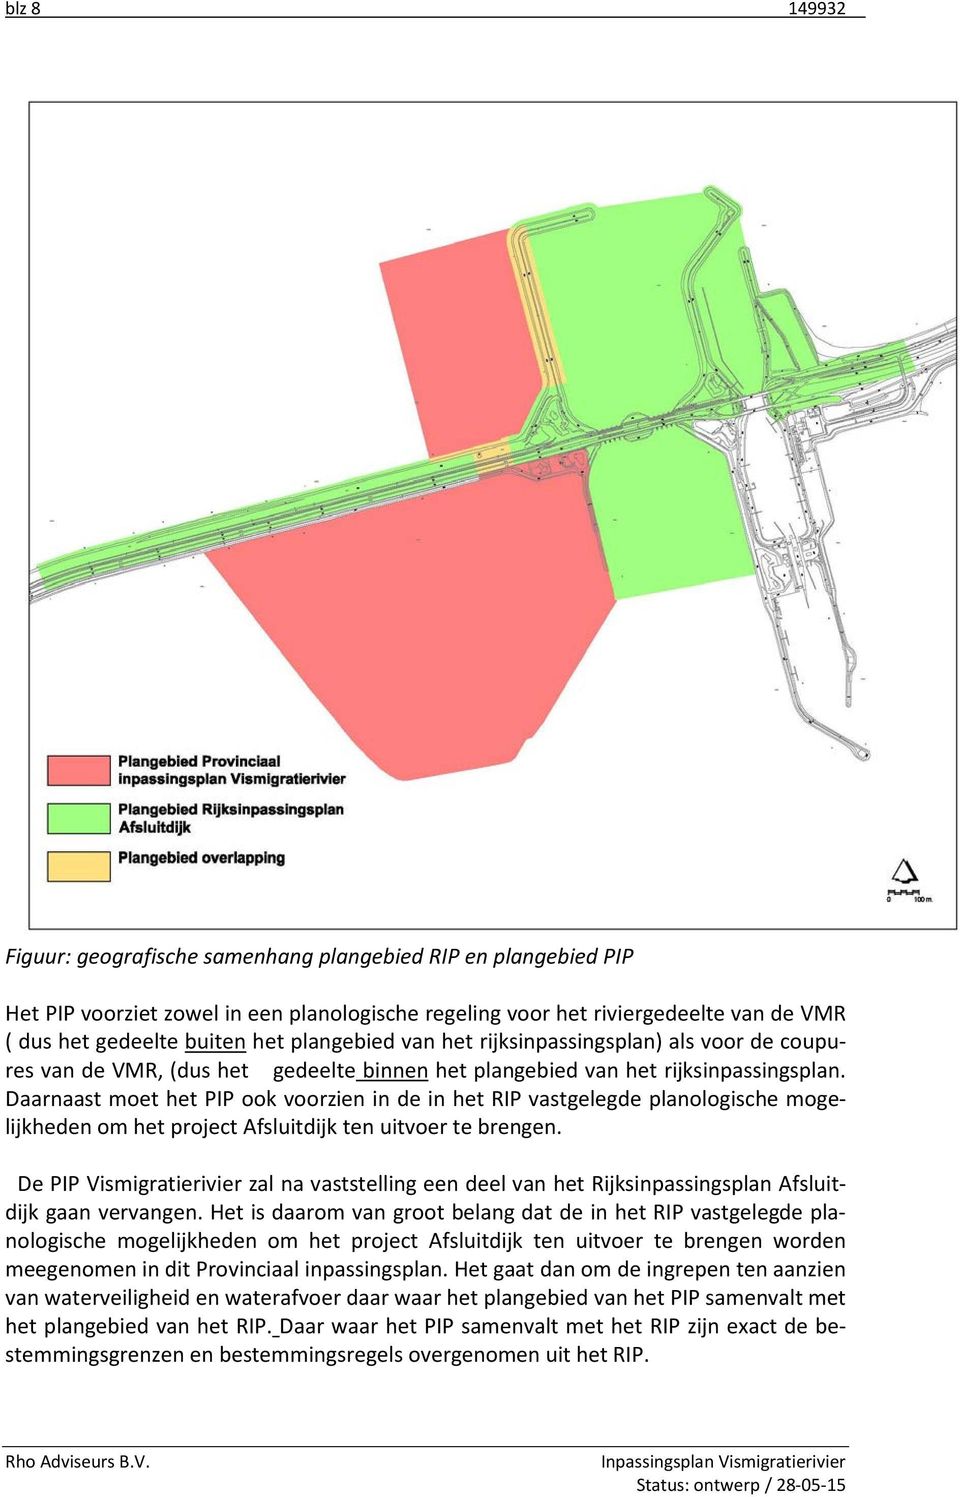 Daarnaast moet het PIP ook voorzien in de in het RIP vastgelegde planologische mogelijkheden om het project Afsluitdijk ten uitvoer te brengen.